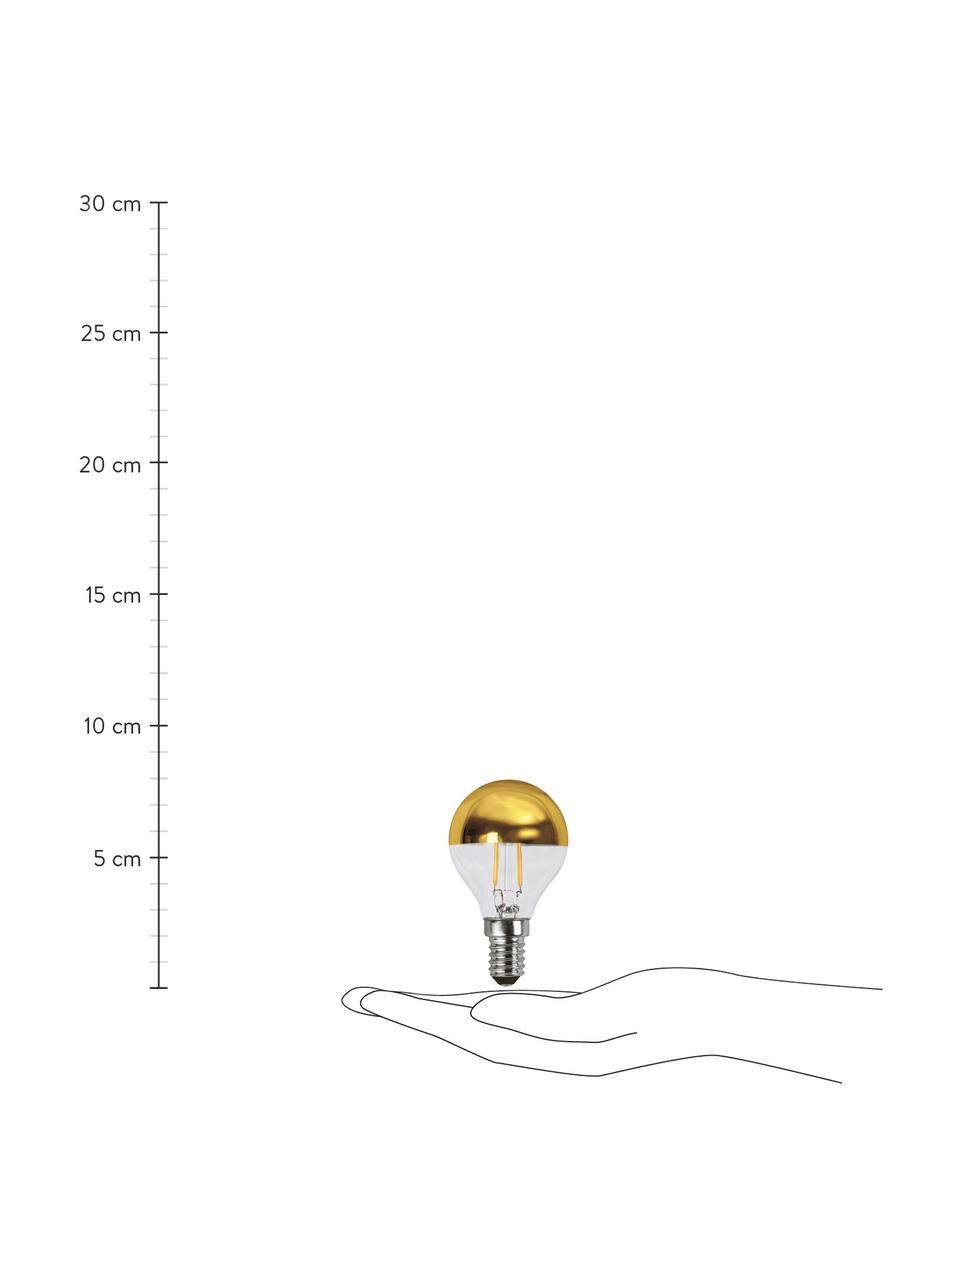 E14 Leuchtmittel, 180lm, warmweiß, 2 Stück, Leuchtmittelschirm: Glas, Leuchtmittelfassung: Aluminium, Goldfarben, Transparent, Ø 5 x H 8 cm